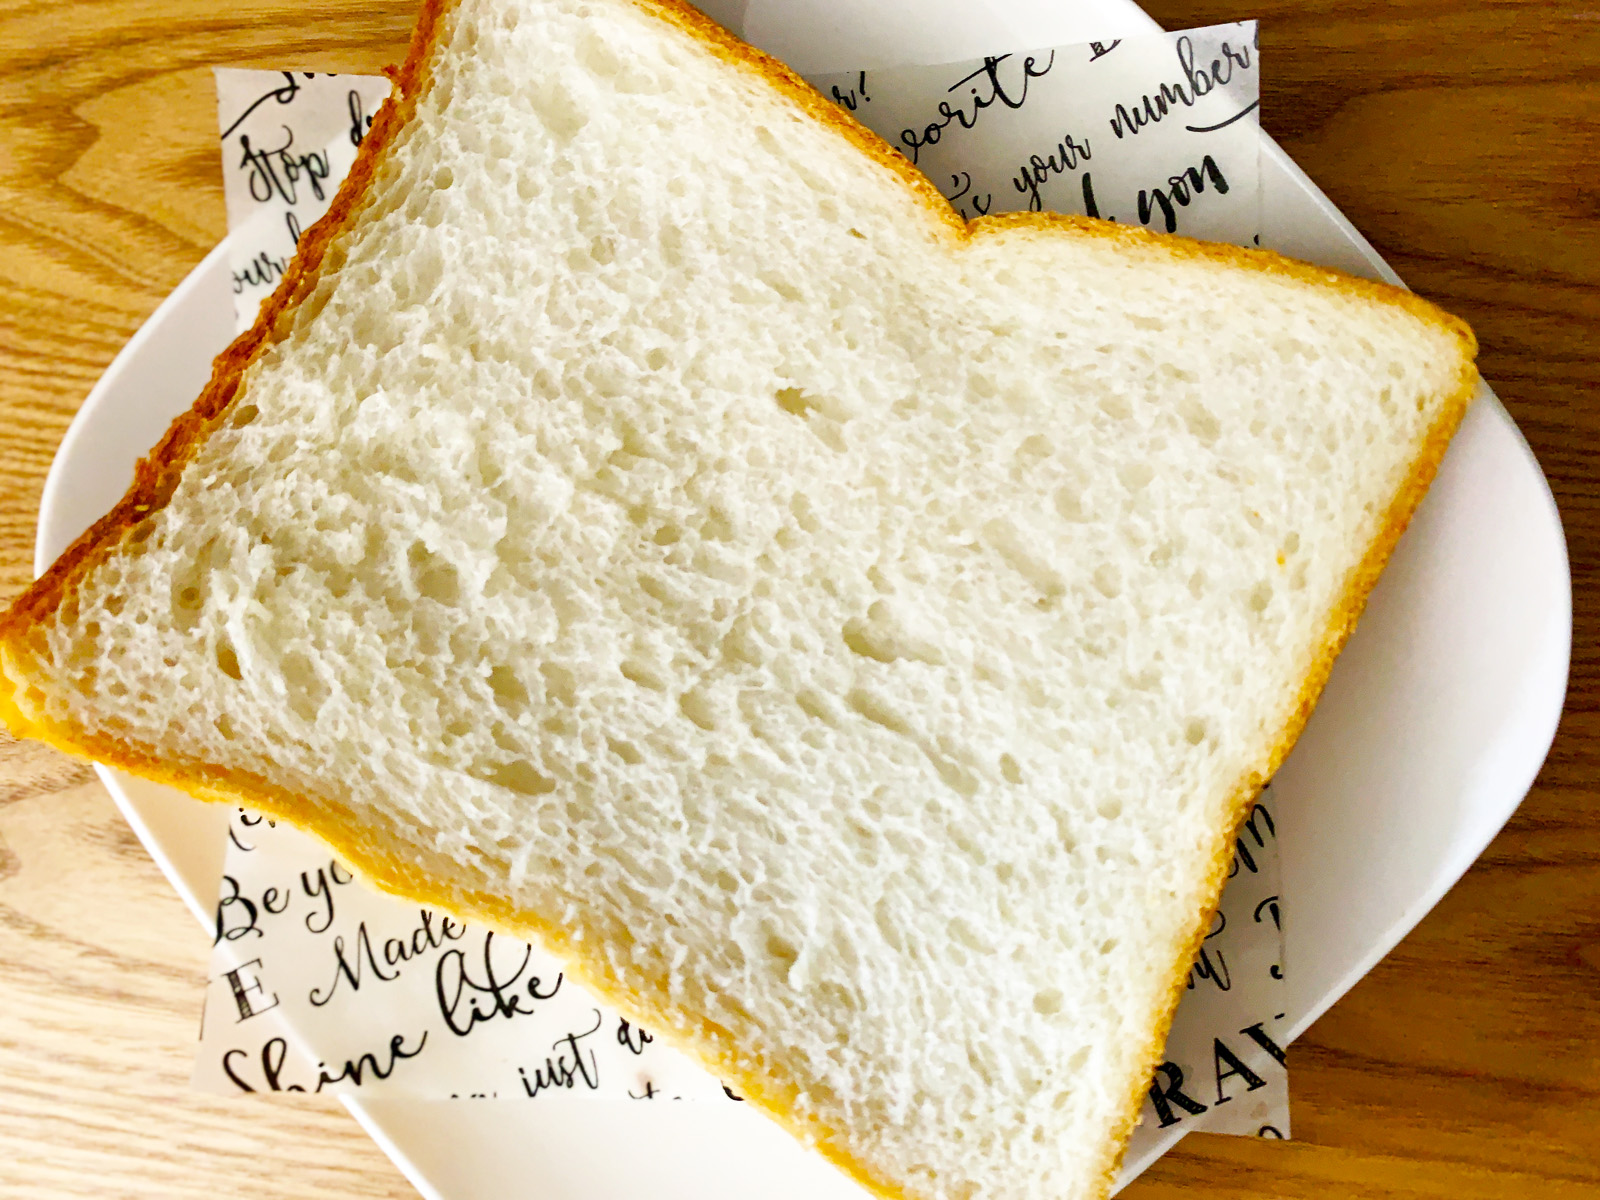 堺市堺区 堺の老舗店 世界パン のパンで朝ごはんをもっと楽しむ さとゆう Yahoo Japan クリエイターズプログラム